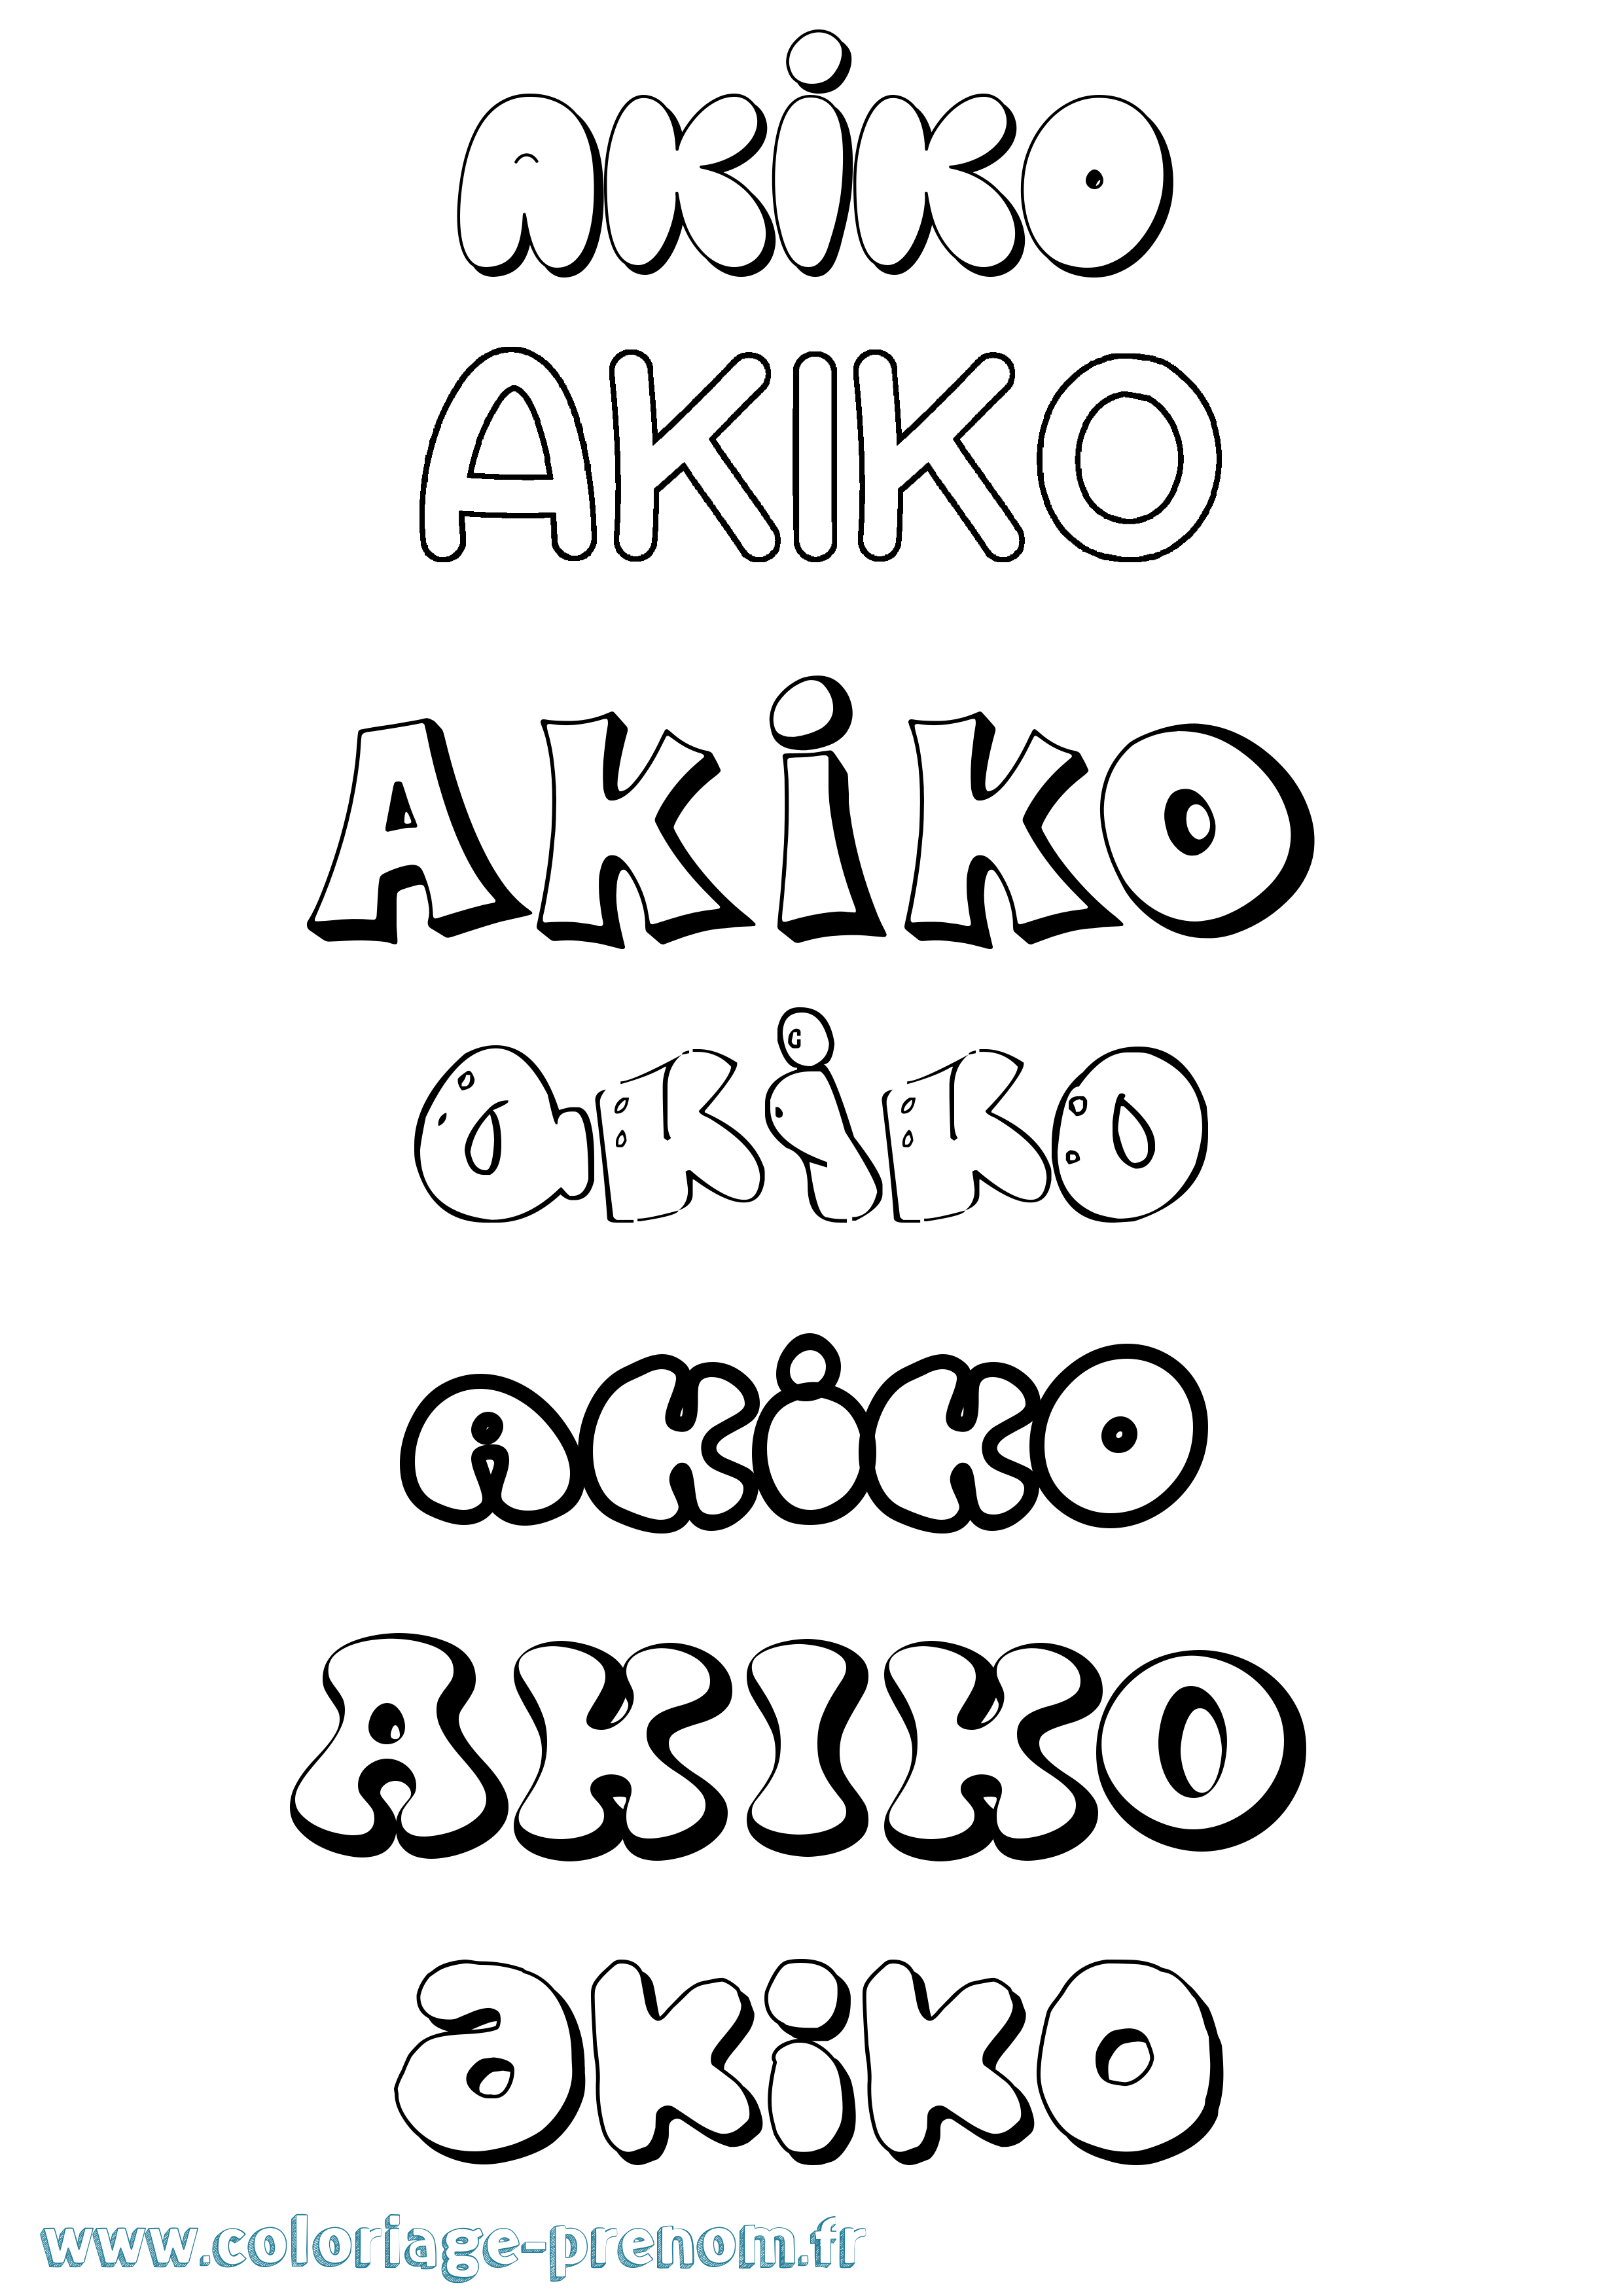 Coloriage prénom Akiko Bubble